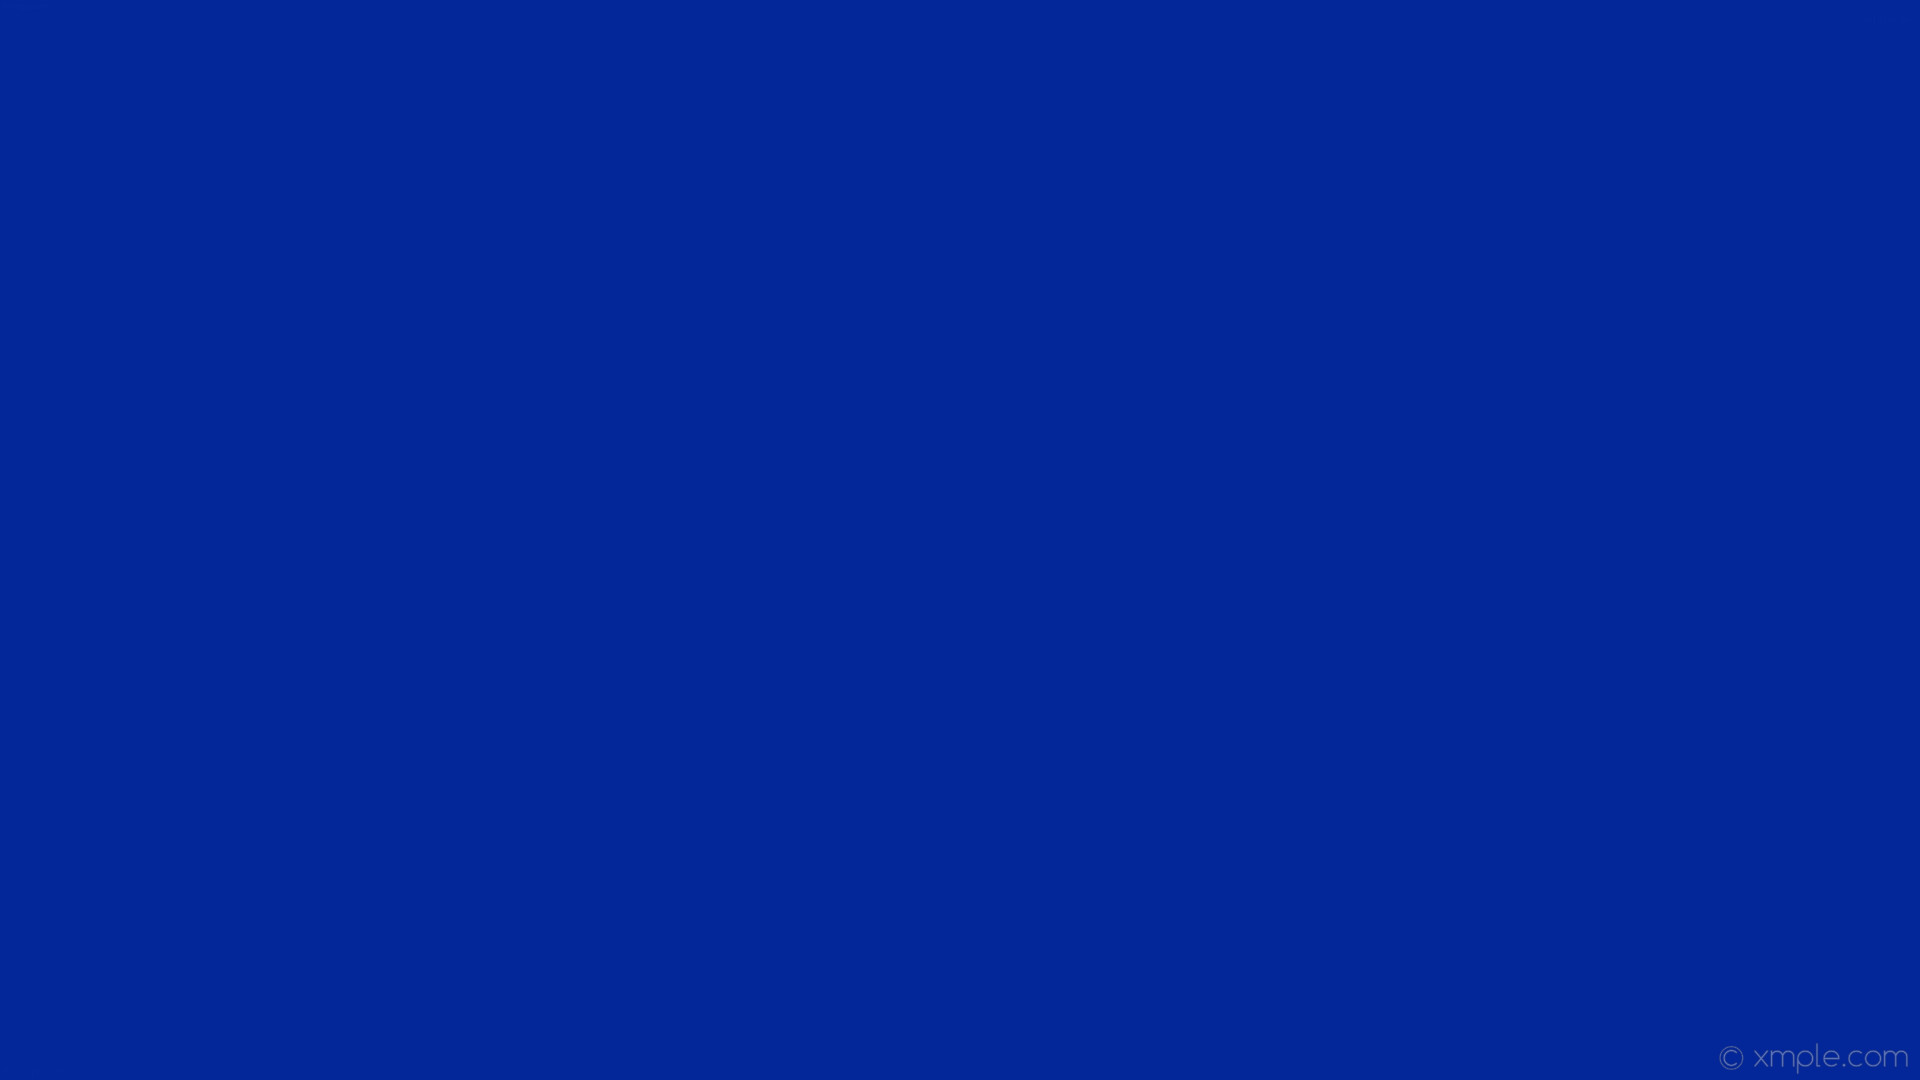 1920x1080 wallpaper solid color blue plain single one colour #032698